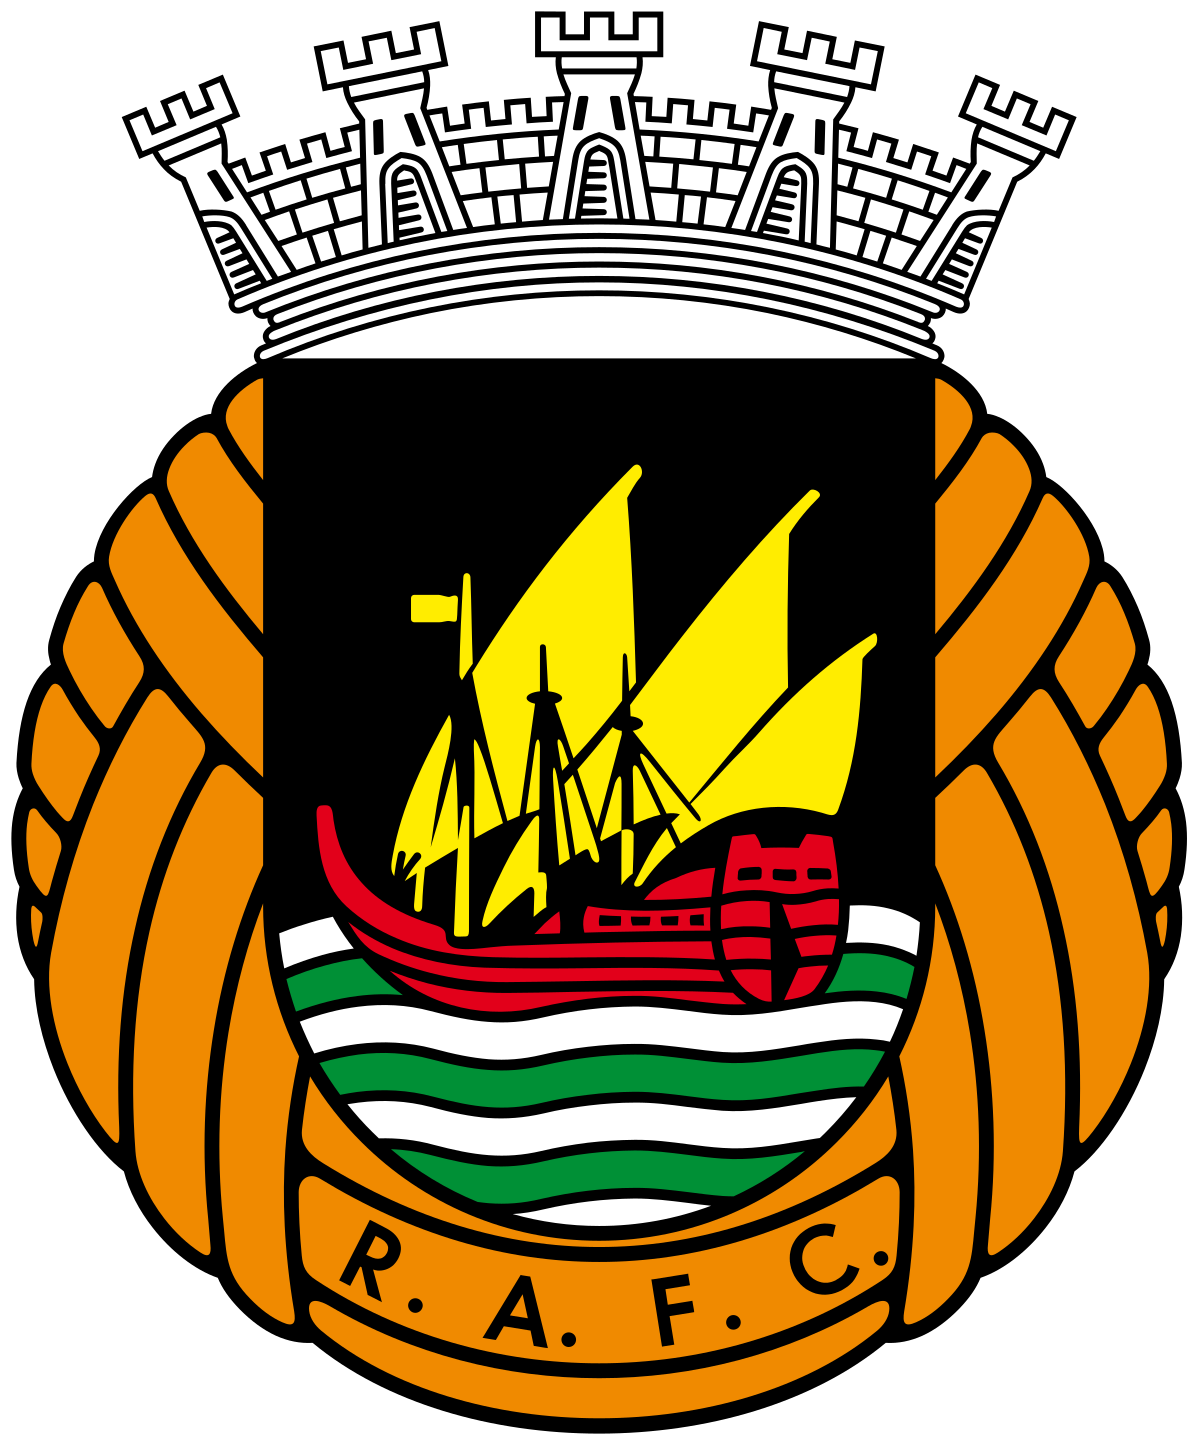 Rio Ave-2 logo